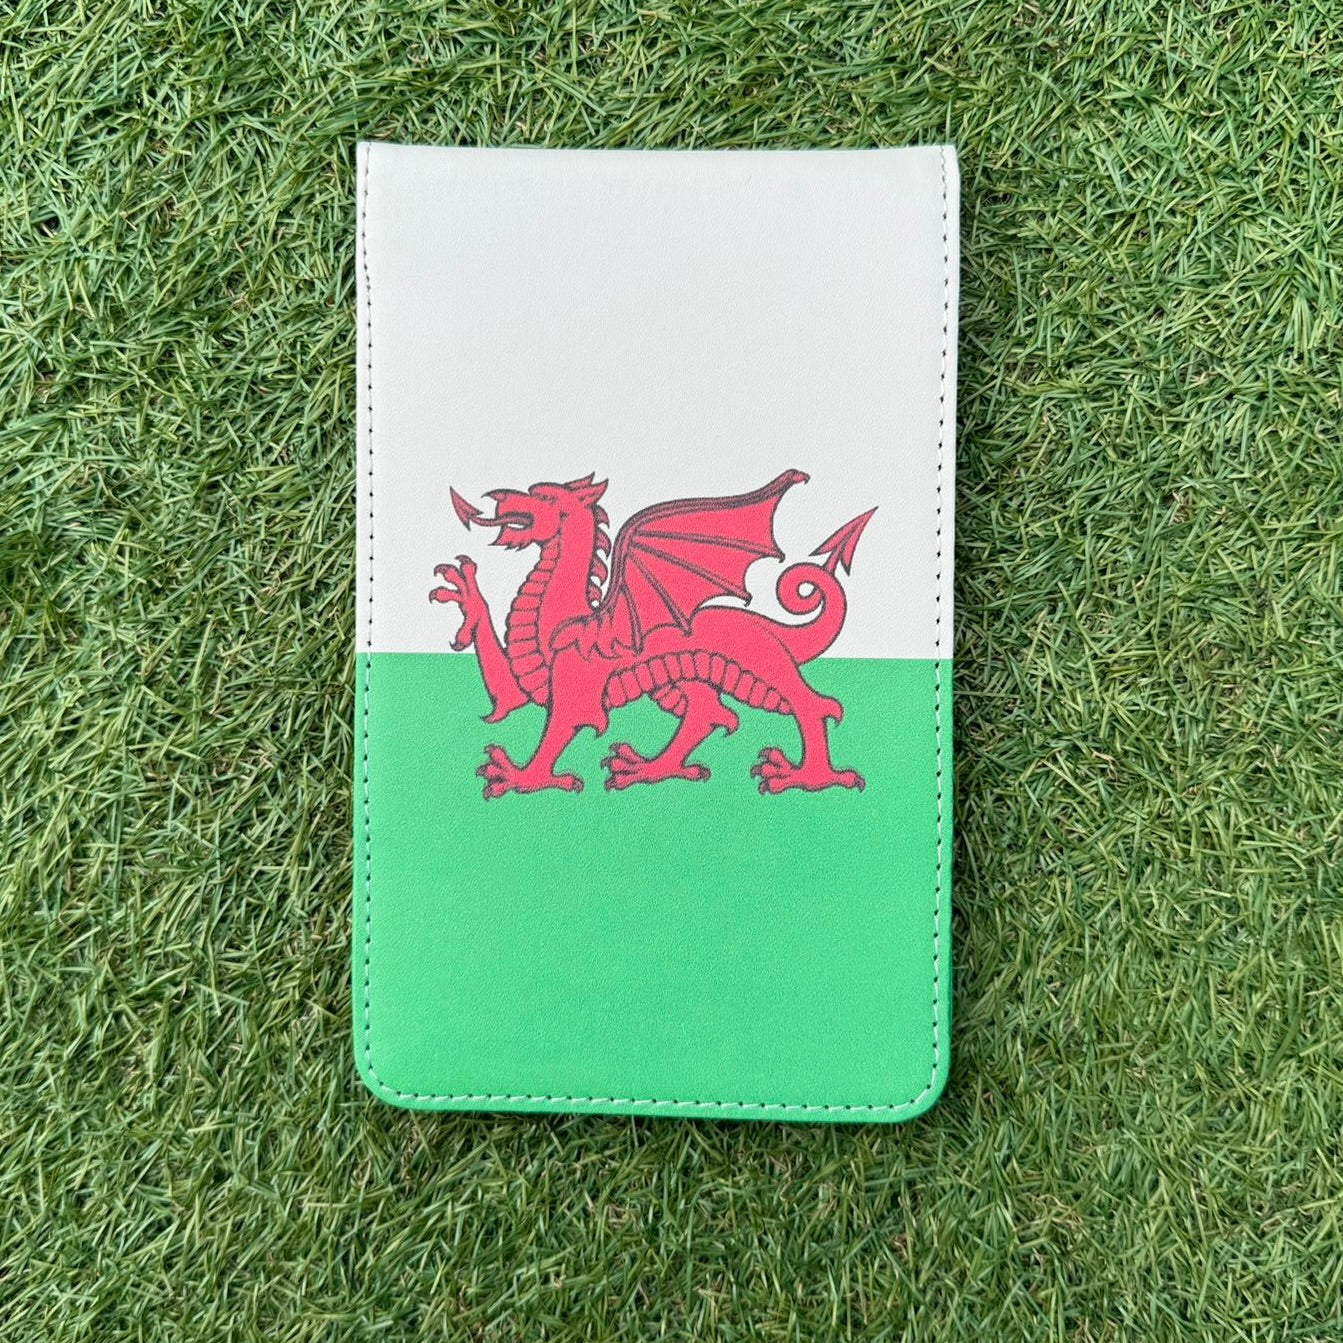 Wales Scorecard